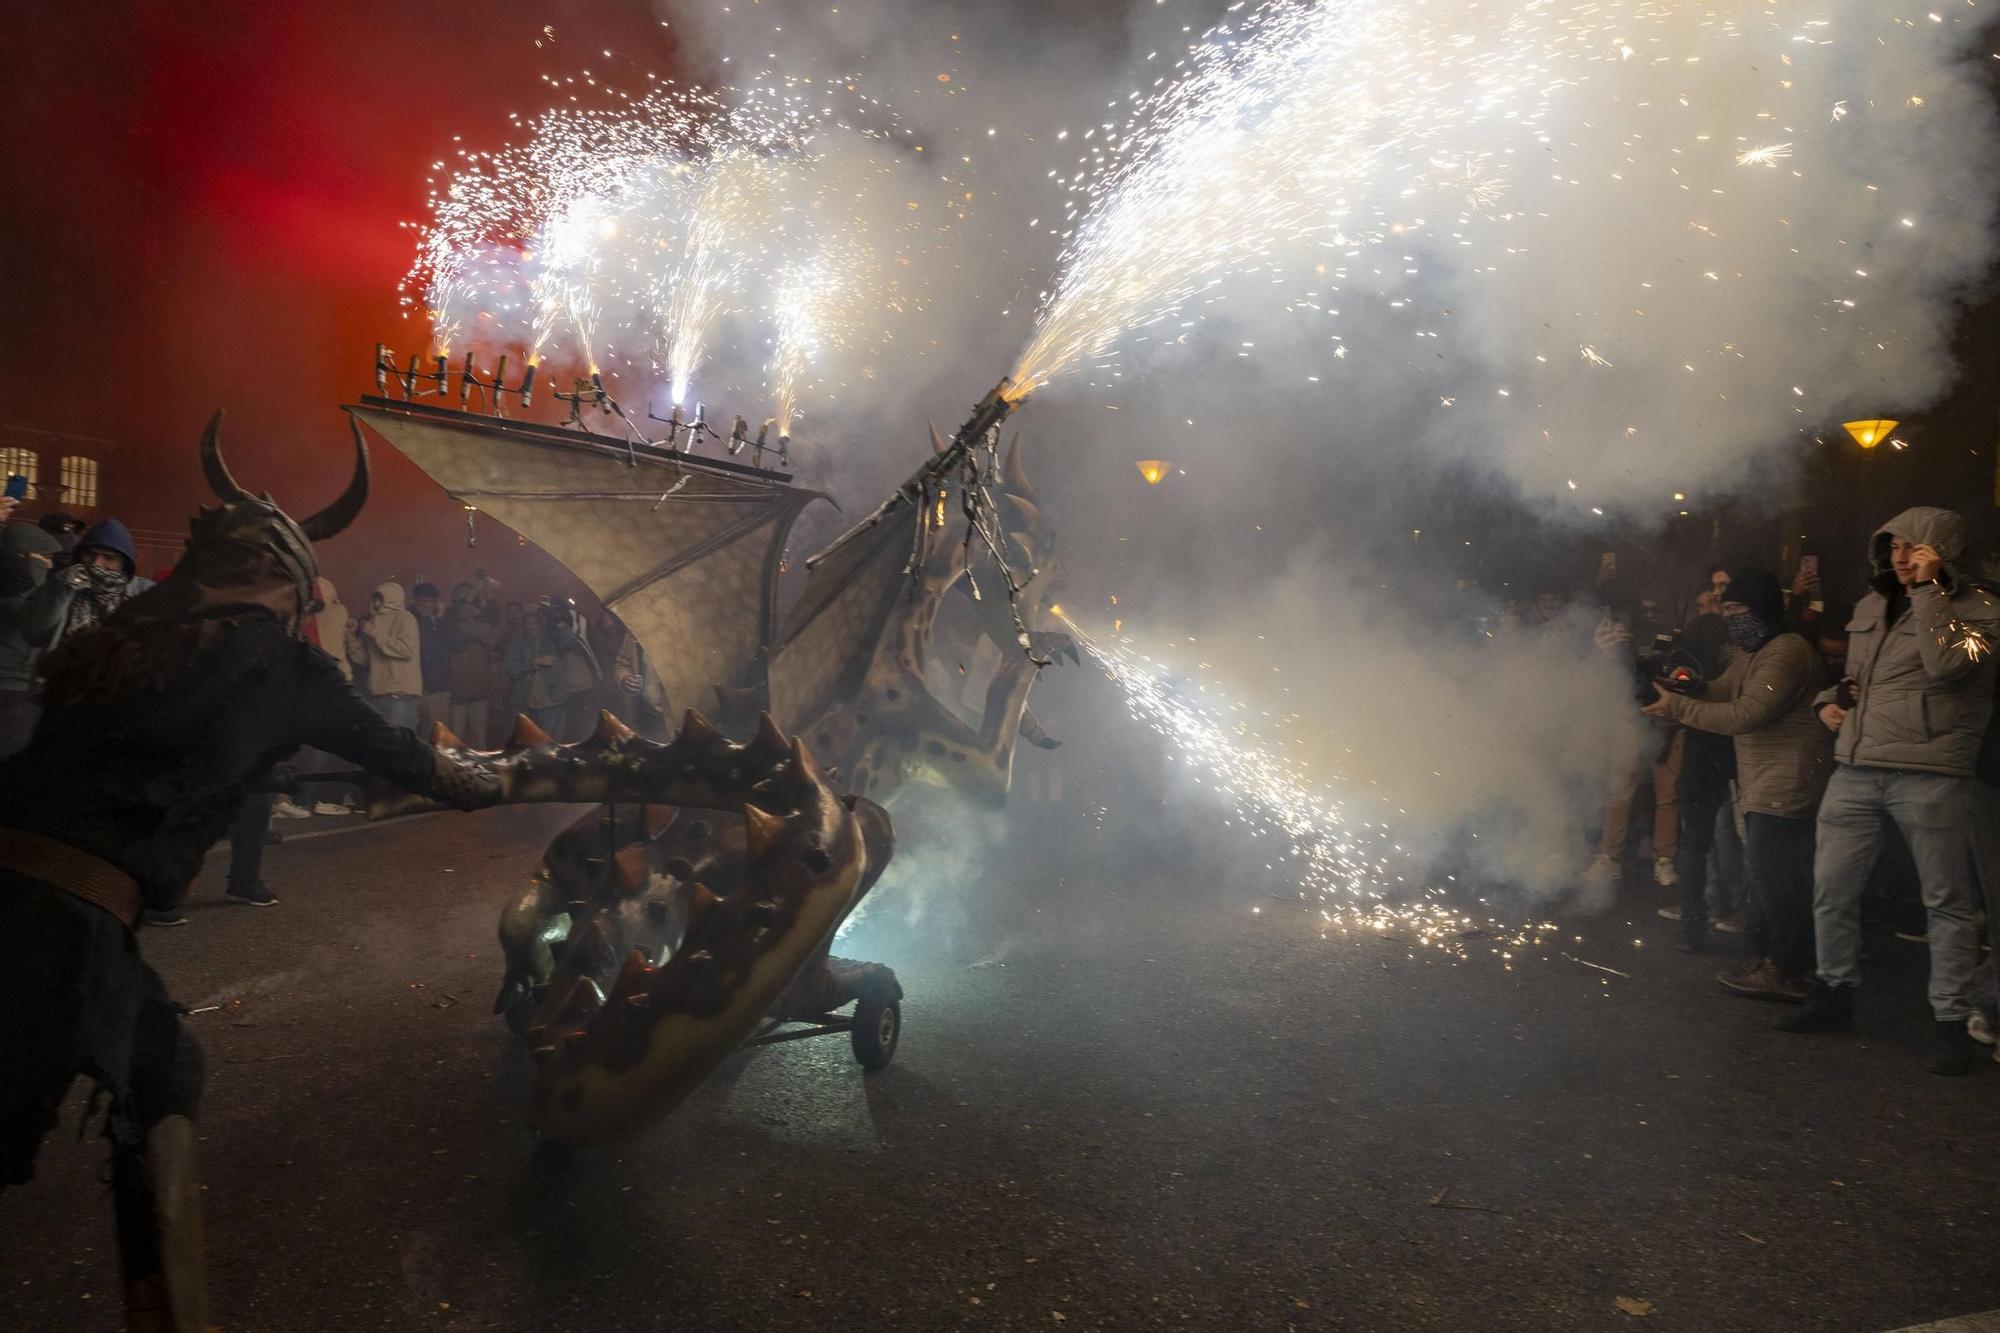 Höllenspektakel zum Abschluss des Stadtfestes von Palma auf Mallorca